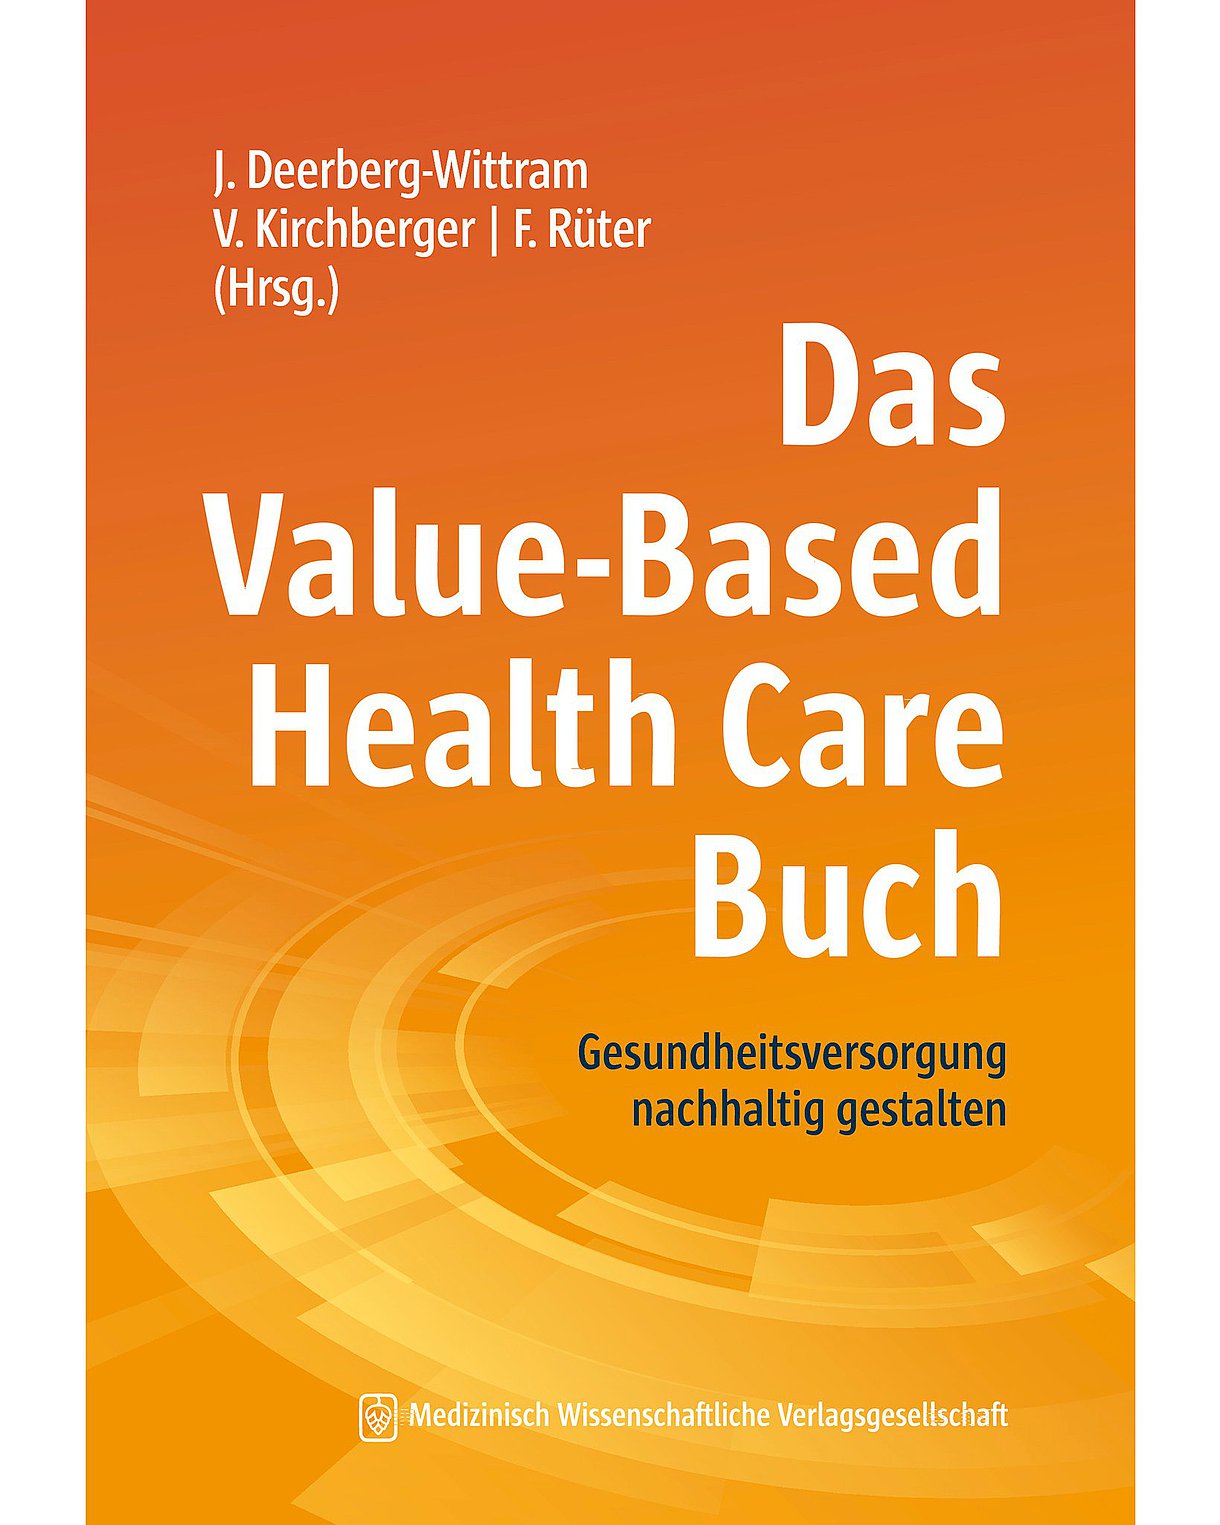 Buchcover: Das Value-Based Health Care Buch: Orangefarben mit hellen Kreisformationen im unteren Bildteil